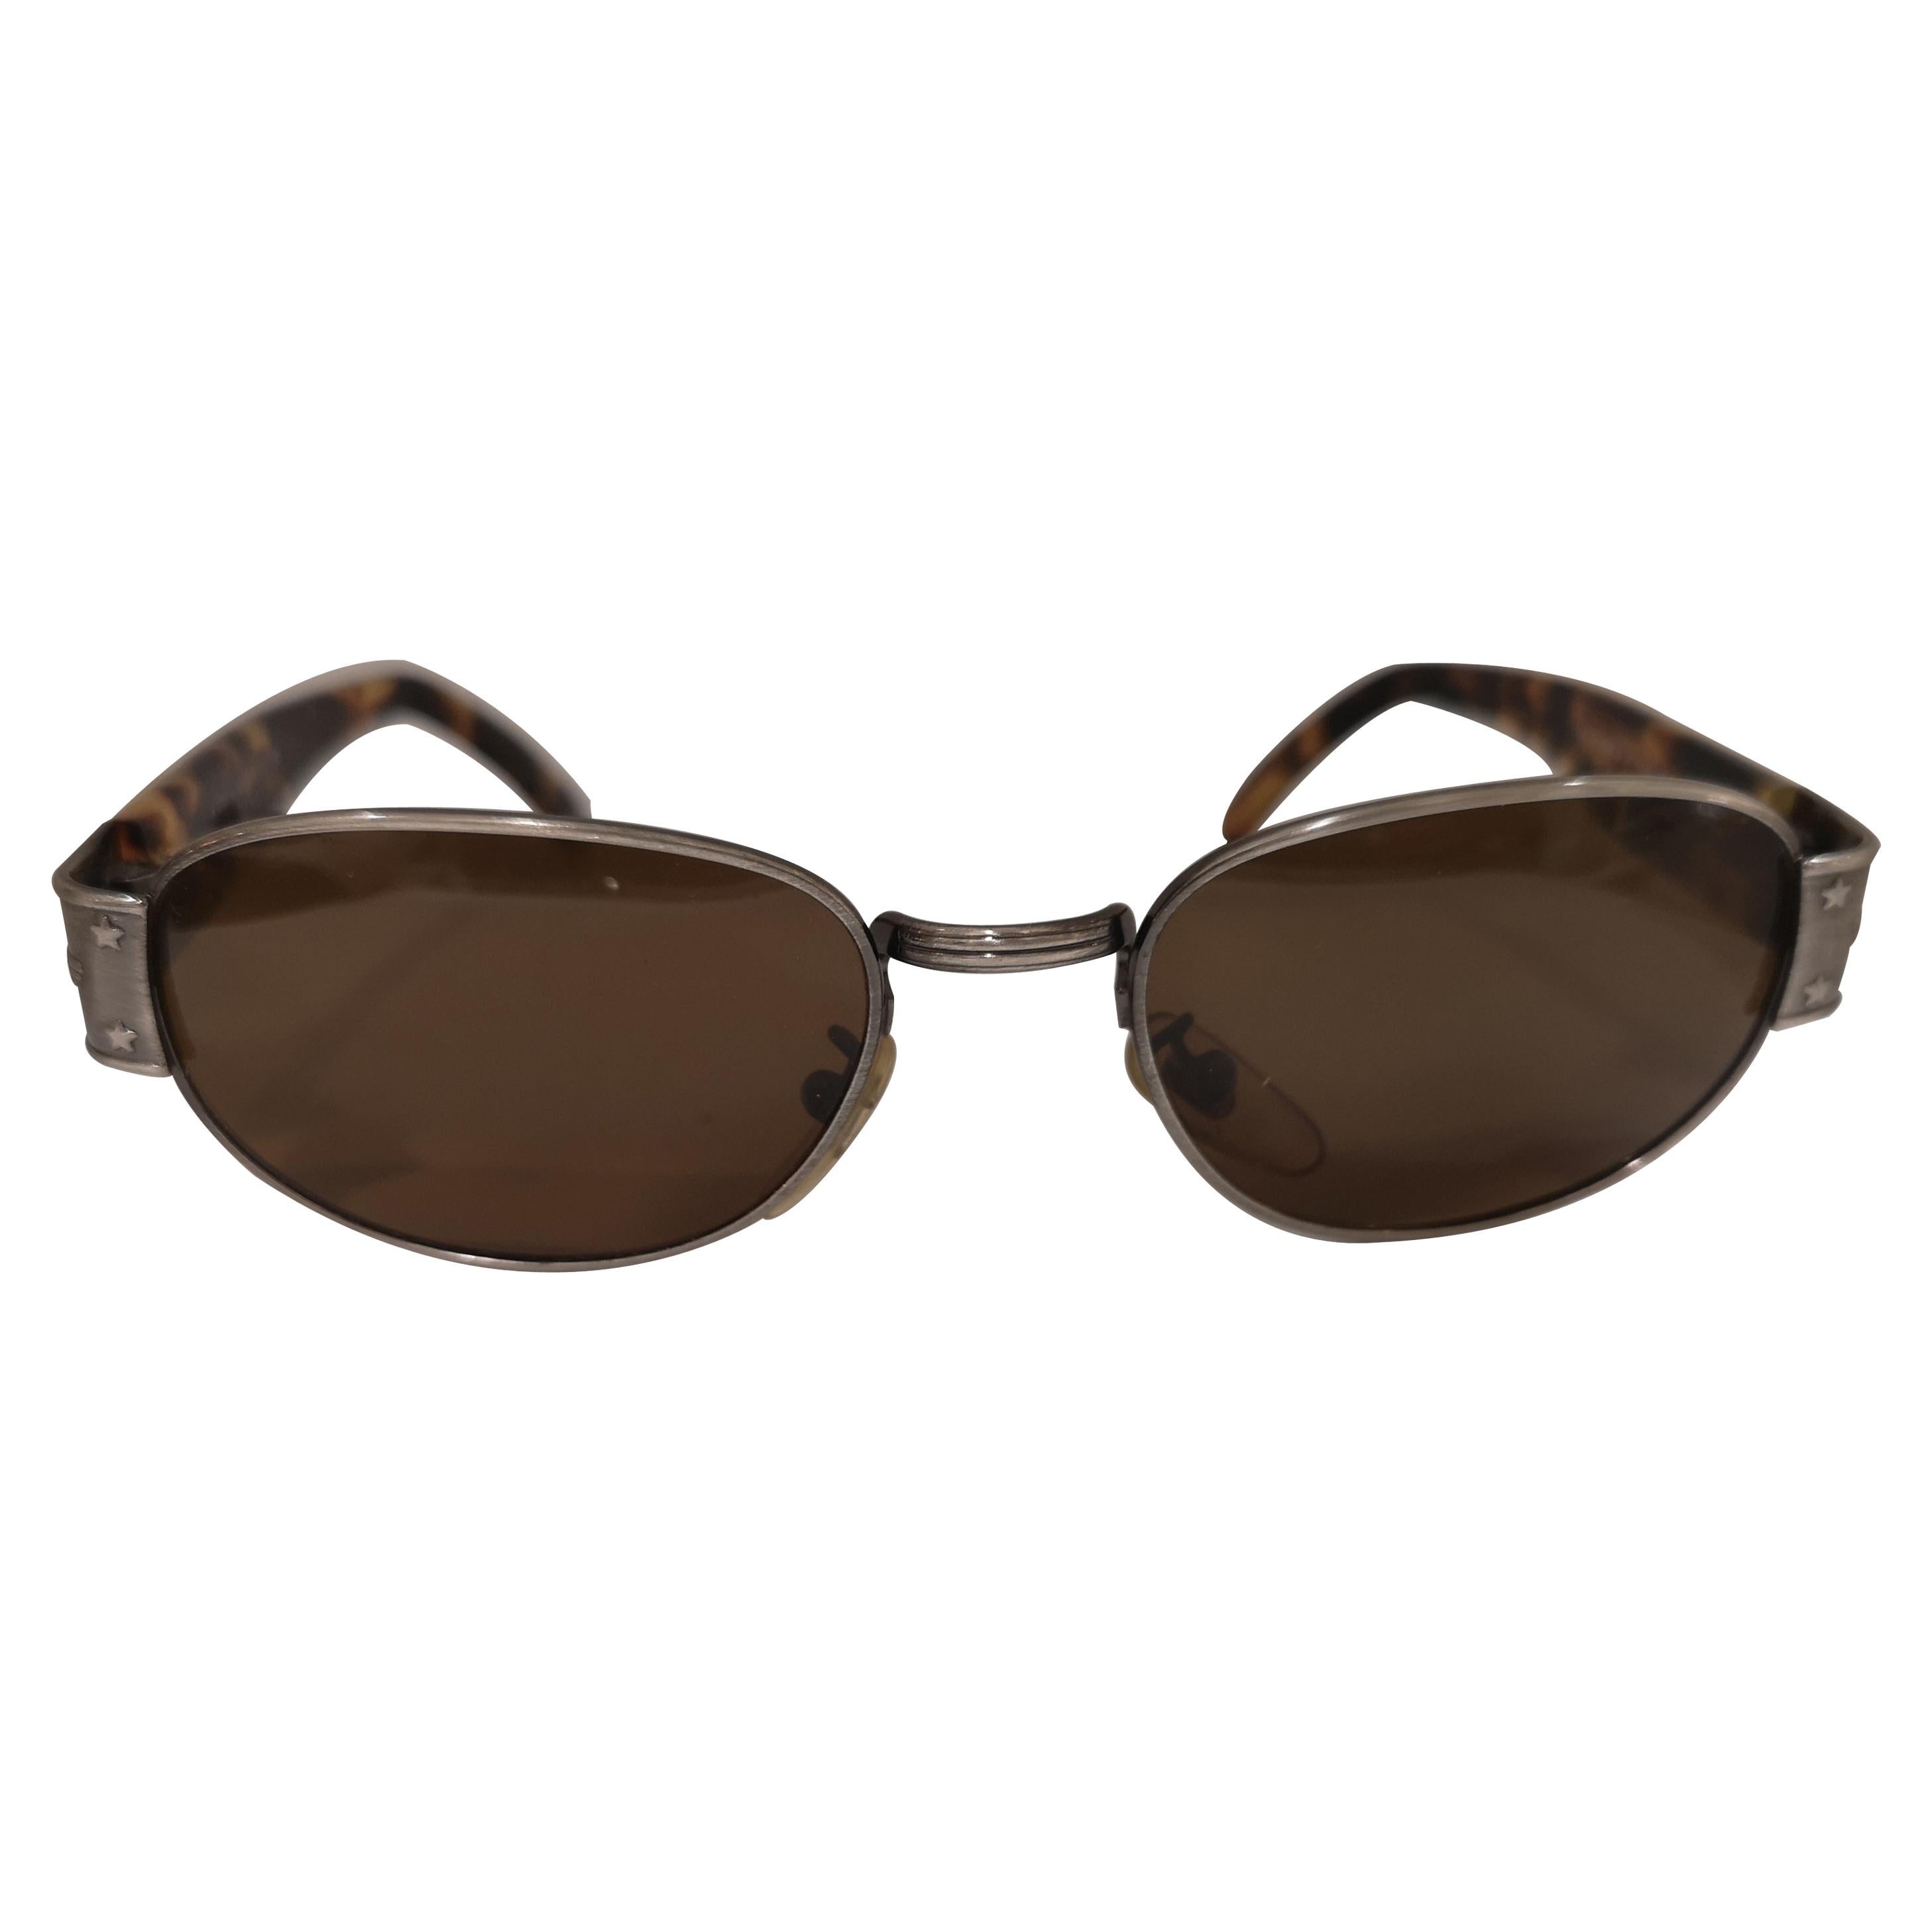 Sting vintage tortoise sunglasses